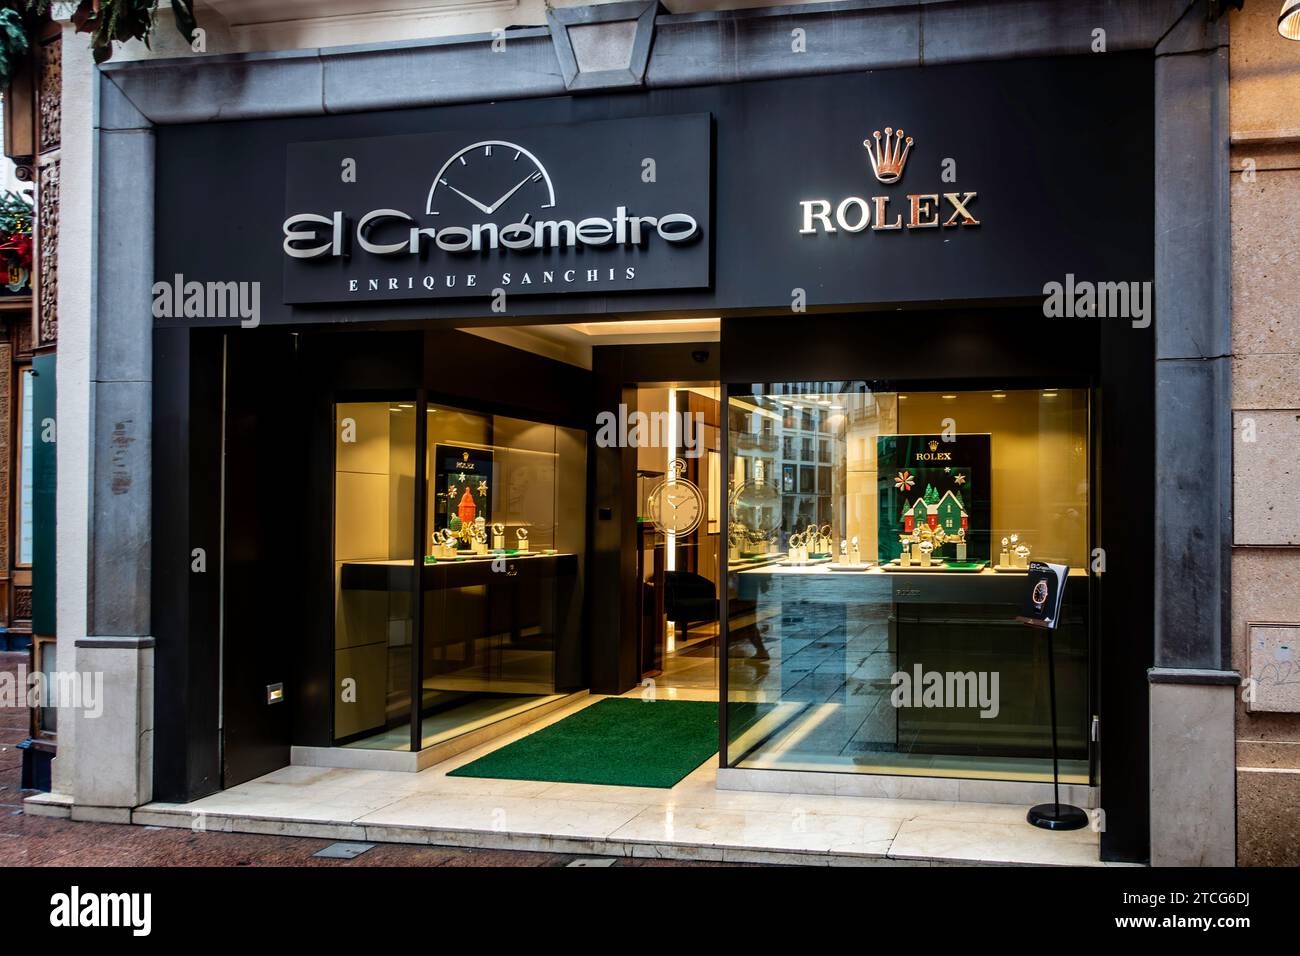 El Cronometro, ein Luxusuhrenhändler von Enrique Sanchis in Sevilla, Spanien. Stockfoto